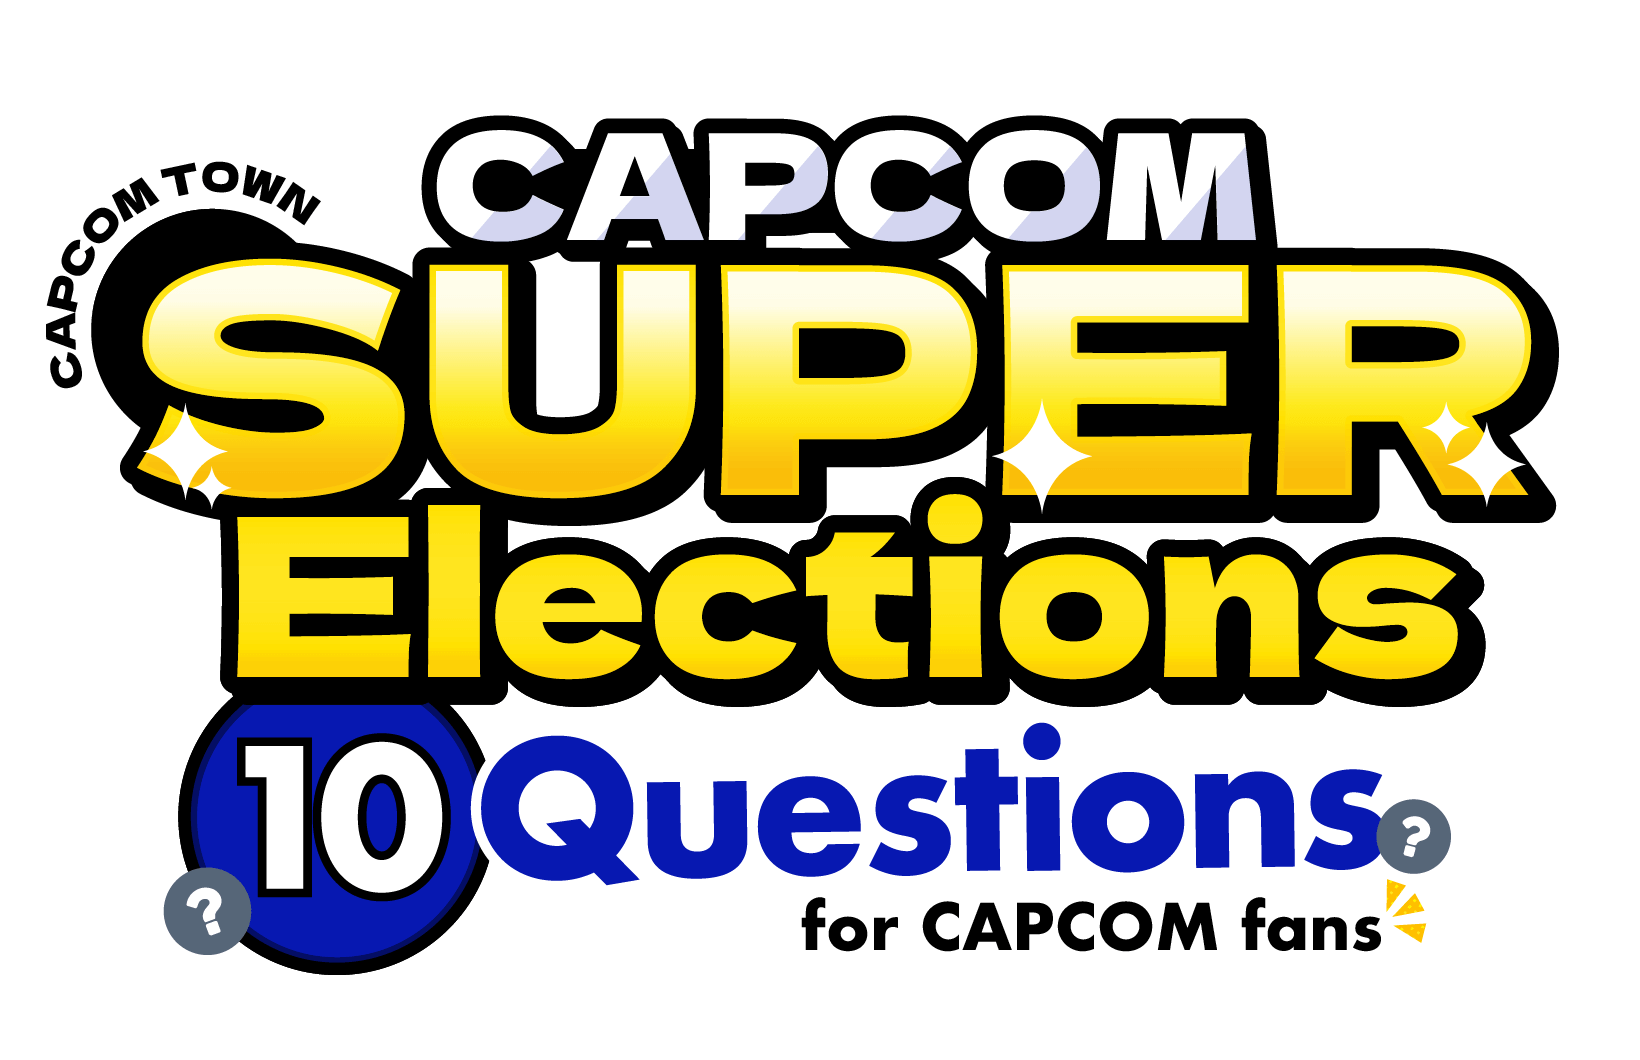 Capcom Super Elections: Ten questions for Capcom fans!